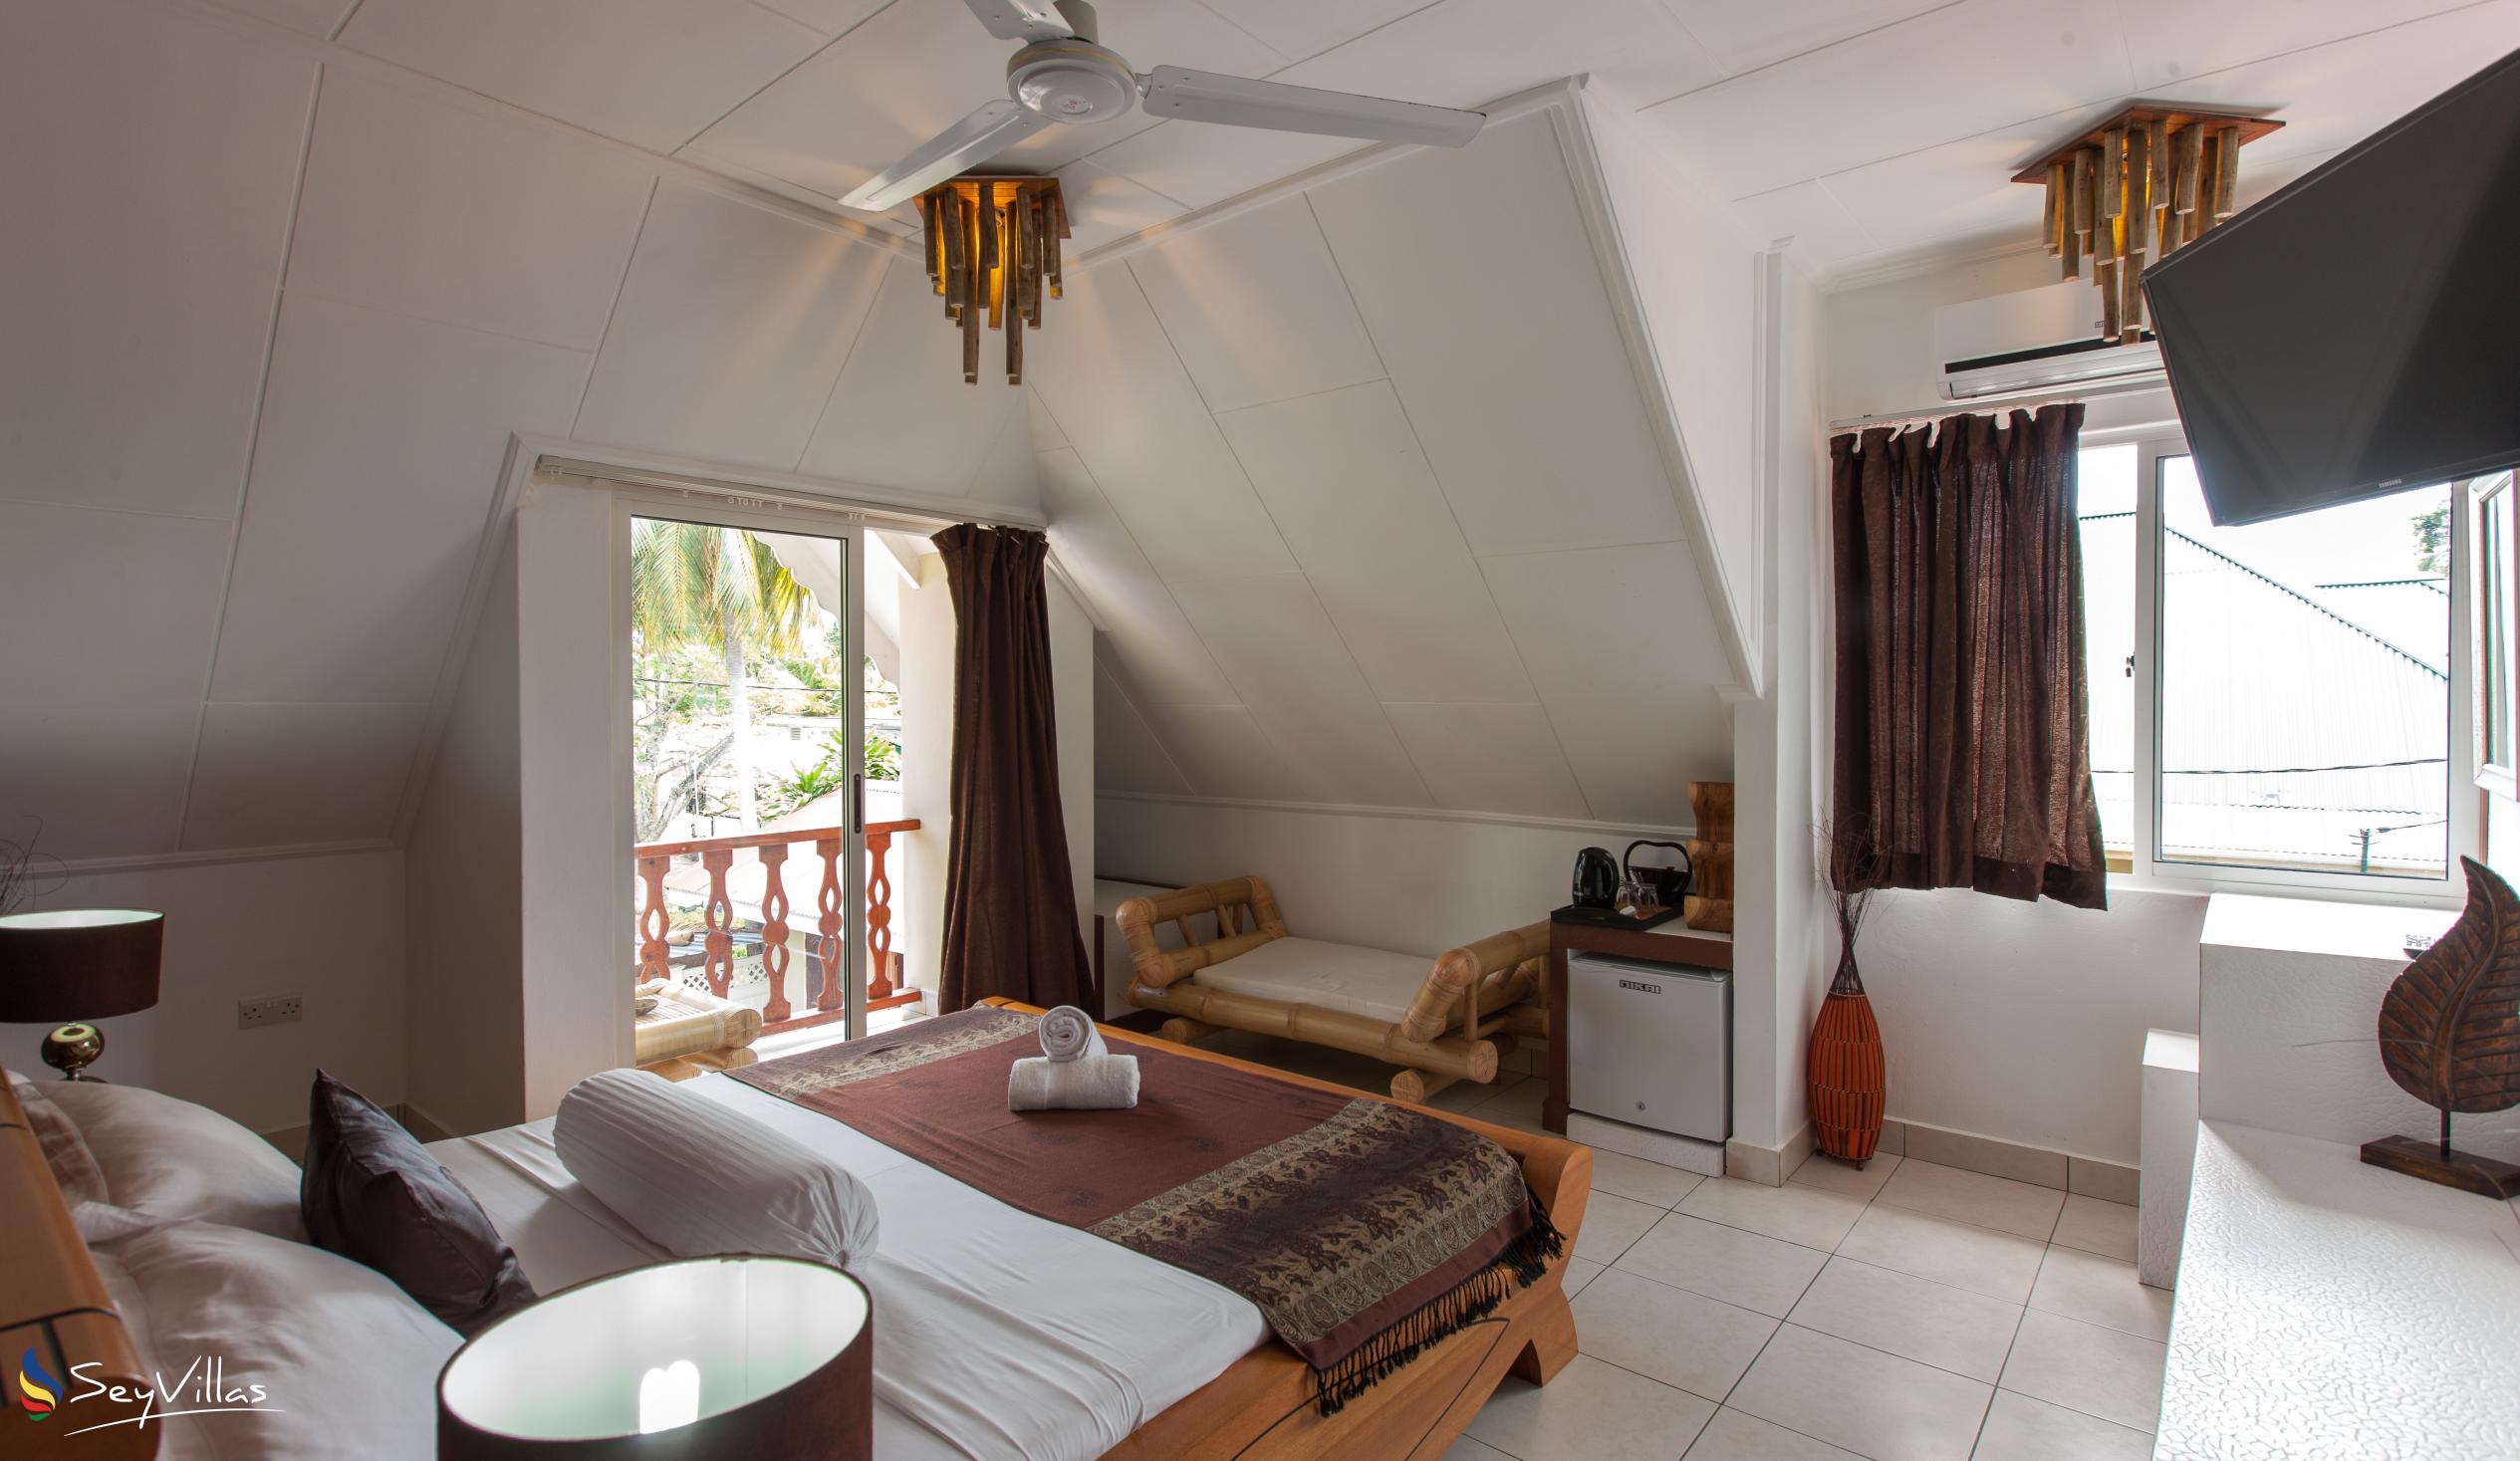 Photo 24: Villa Authentique - Standard Room - La Digue (Seychelles)